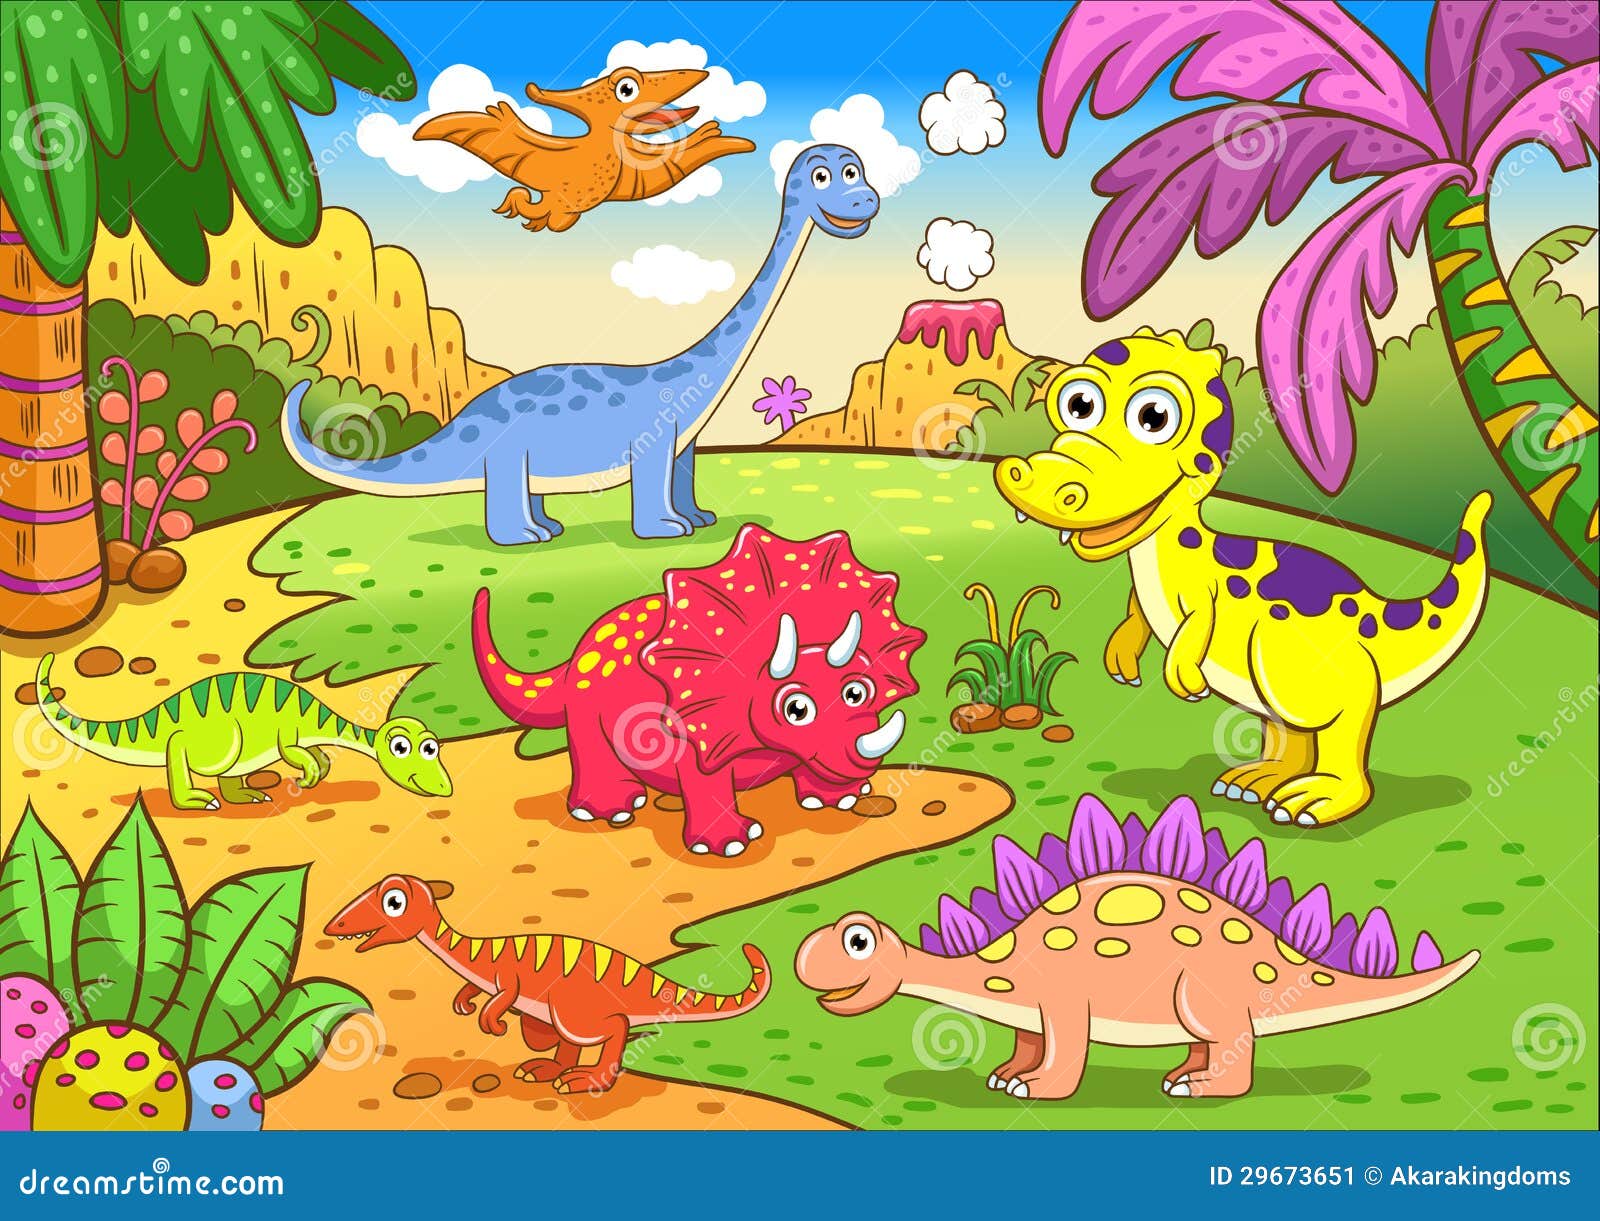 cute dinosaurs in prehistoric scene